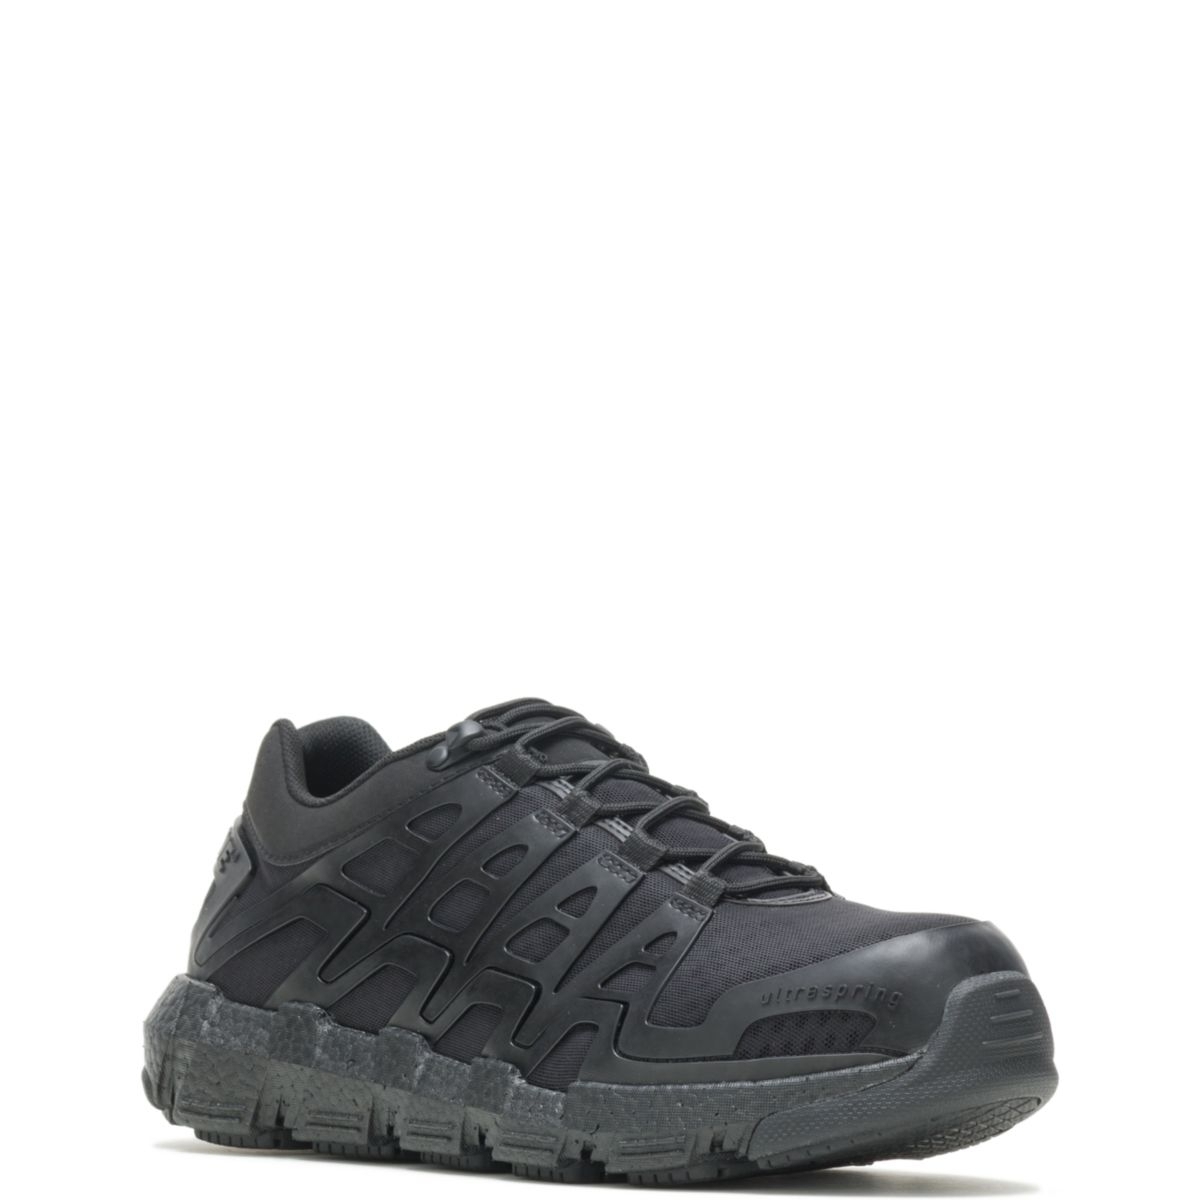 WOLVERINE Men's Rev Vent UltraSpringâ¢ DuraShocksÂ® CarbonMAXÂ® Composite Toe Work Shoe Black - W211017 BLACK - BLACK, 11.5